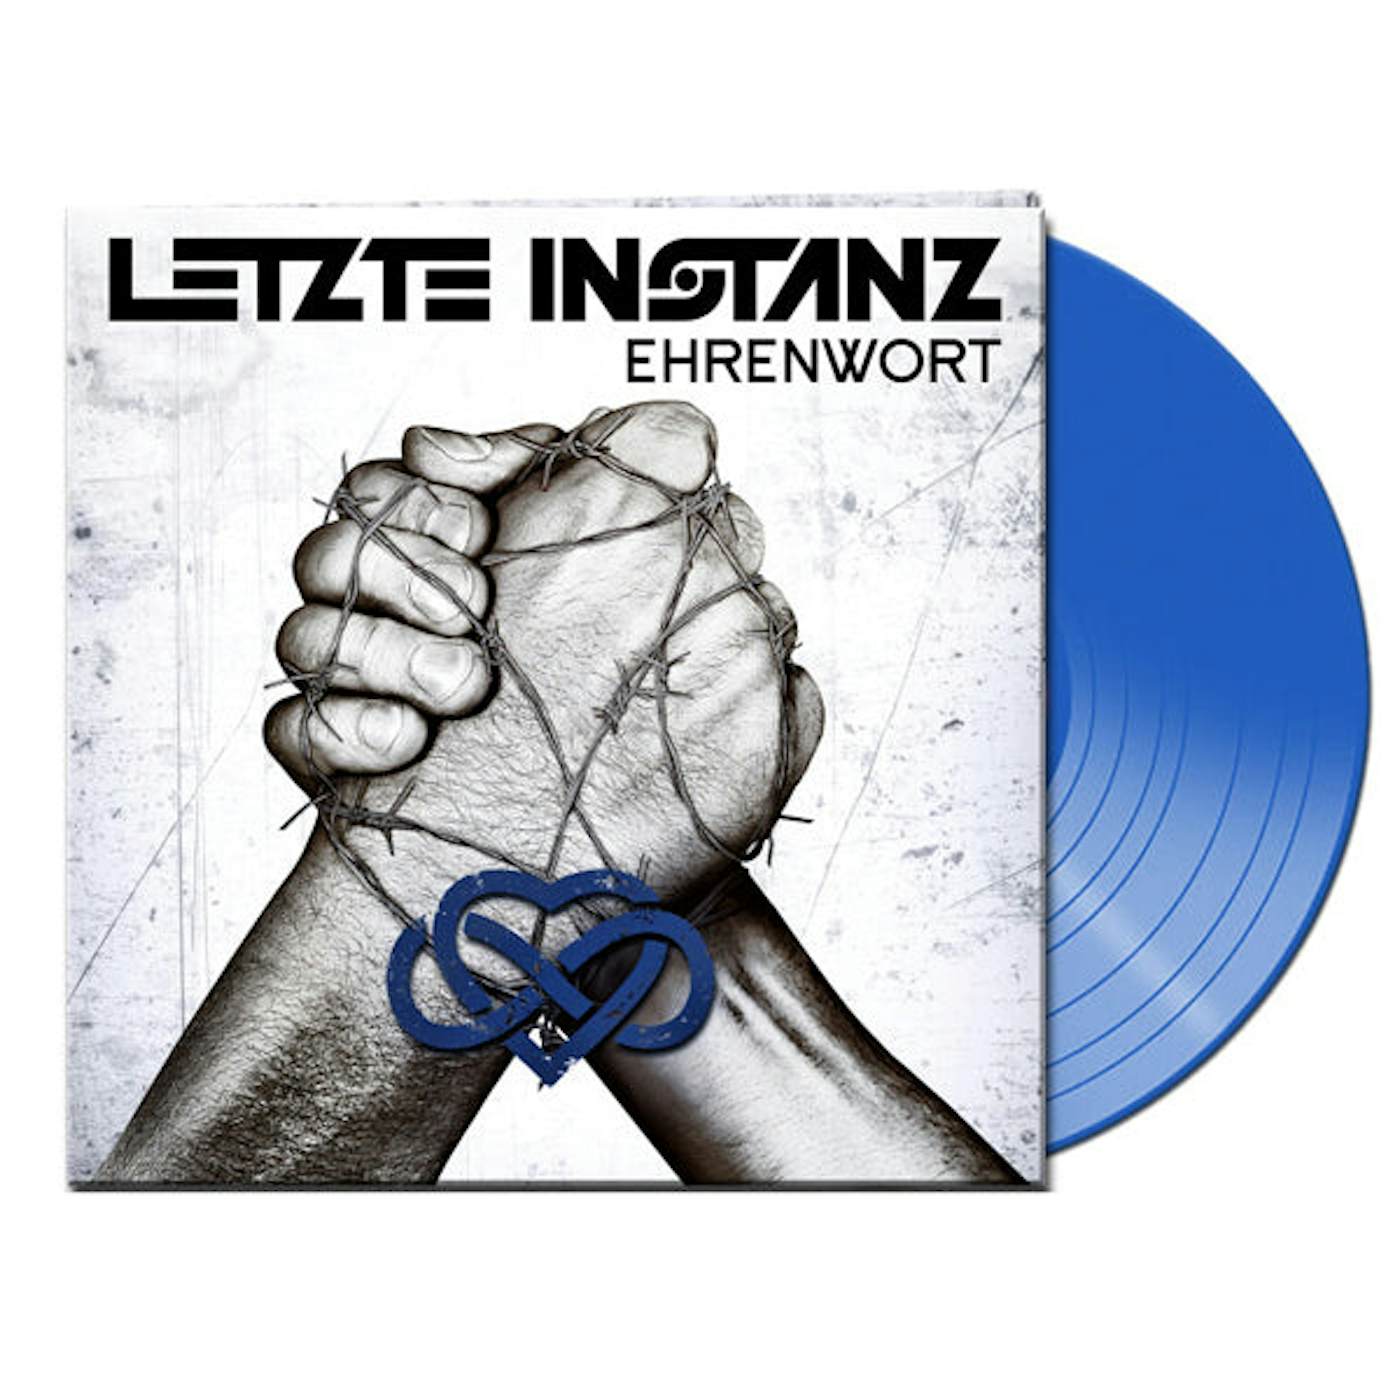 Letzte Instanz LP - Ehrenwort (Clear Blue Vinyl)